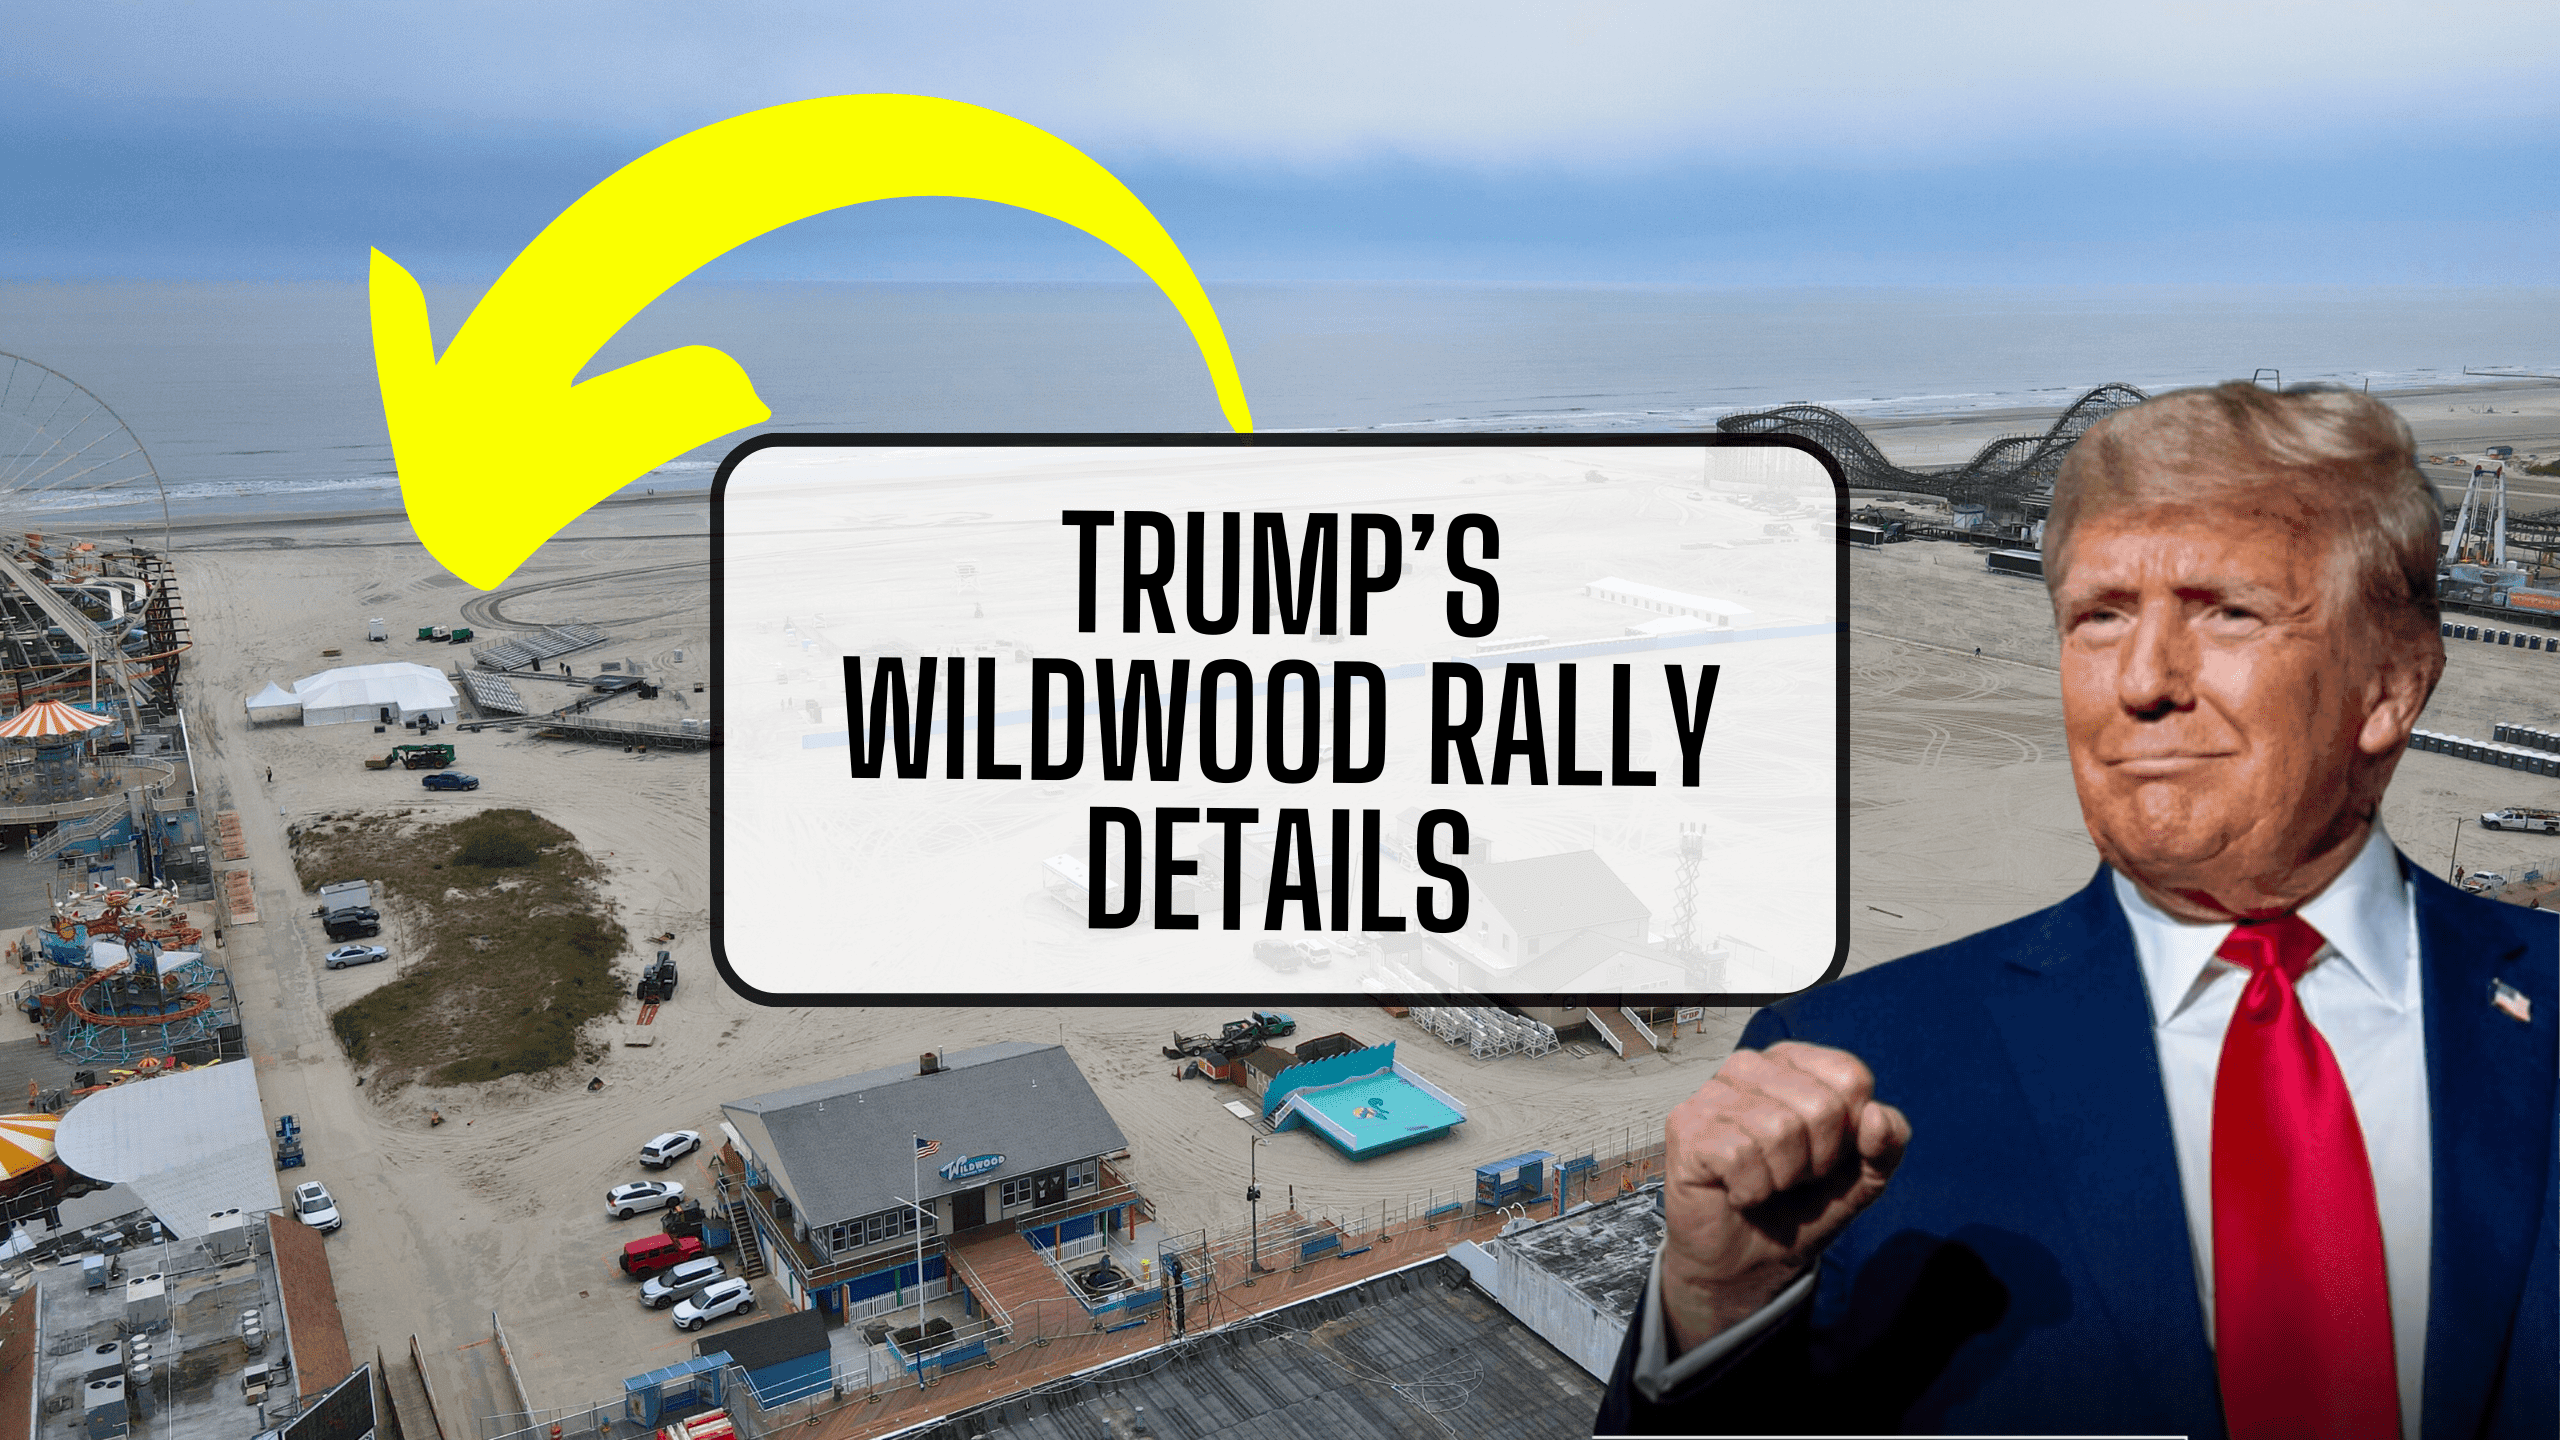 Trump’s Wildwood Rally Details RELEASED